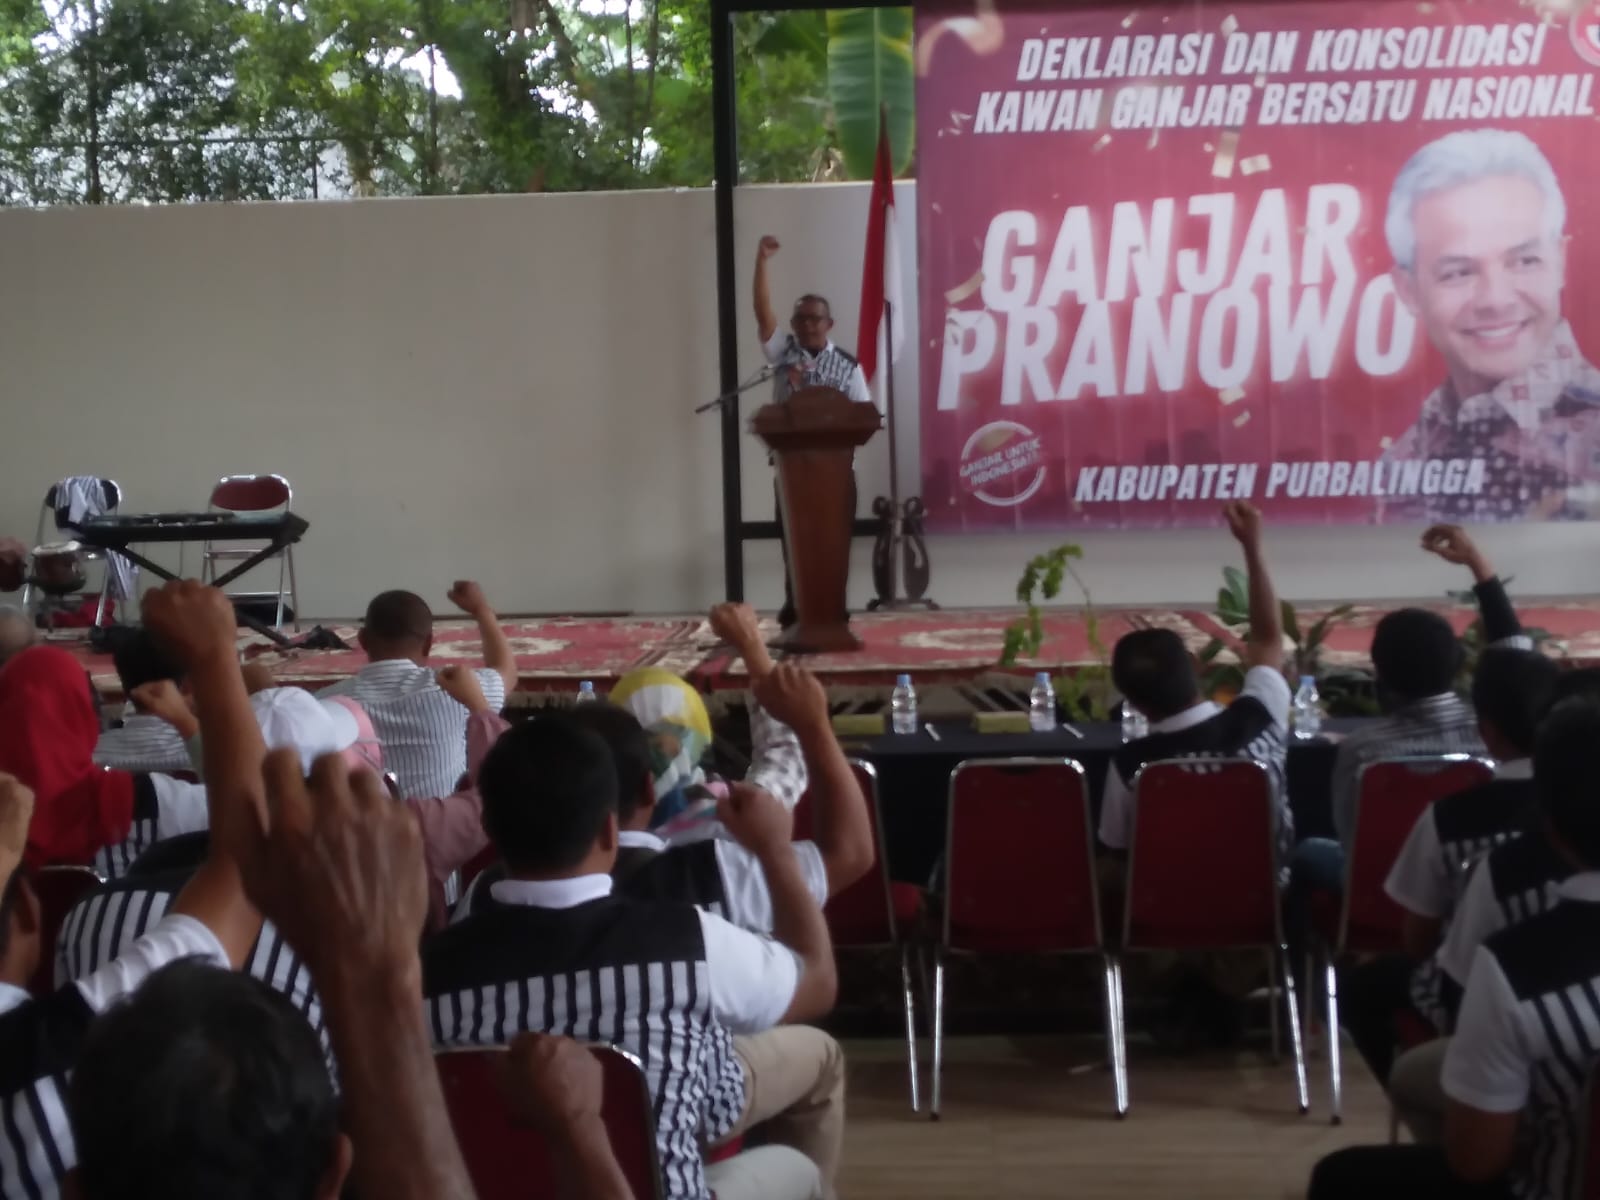 DPC KGBN Purbalingga Dideklarasikan, Siap Wujudkan Ibu Negara dari Purbalingga